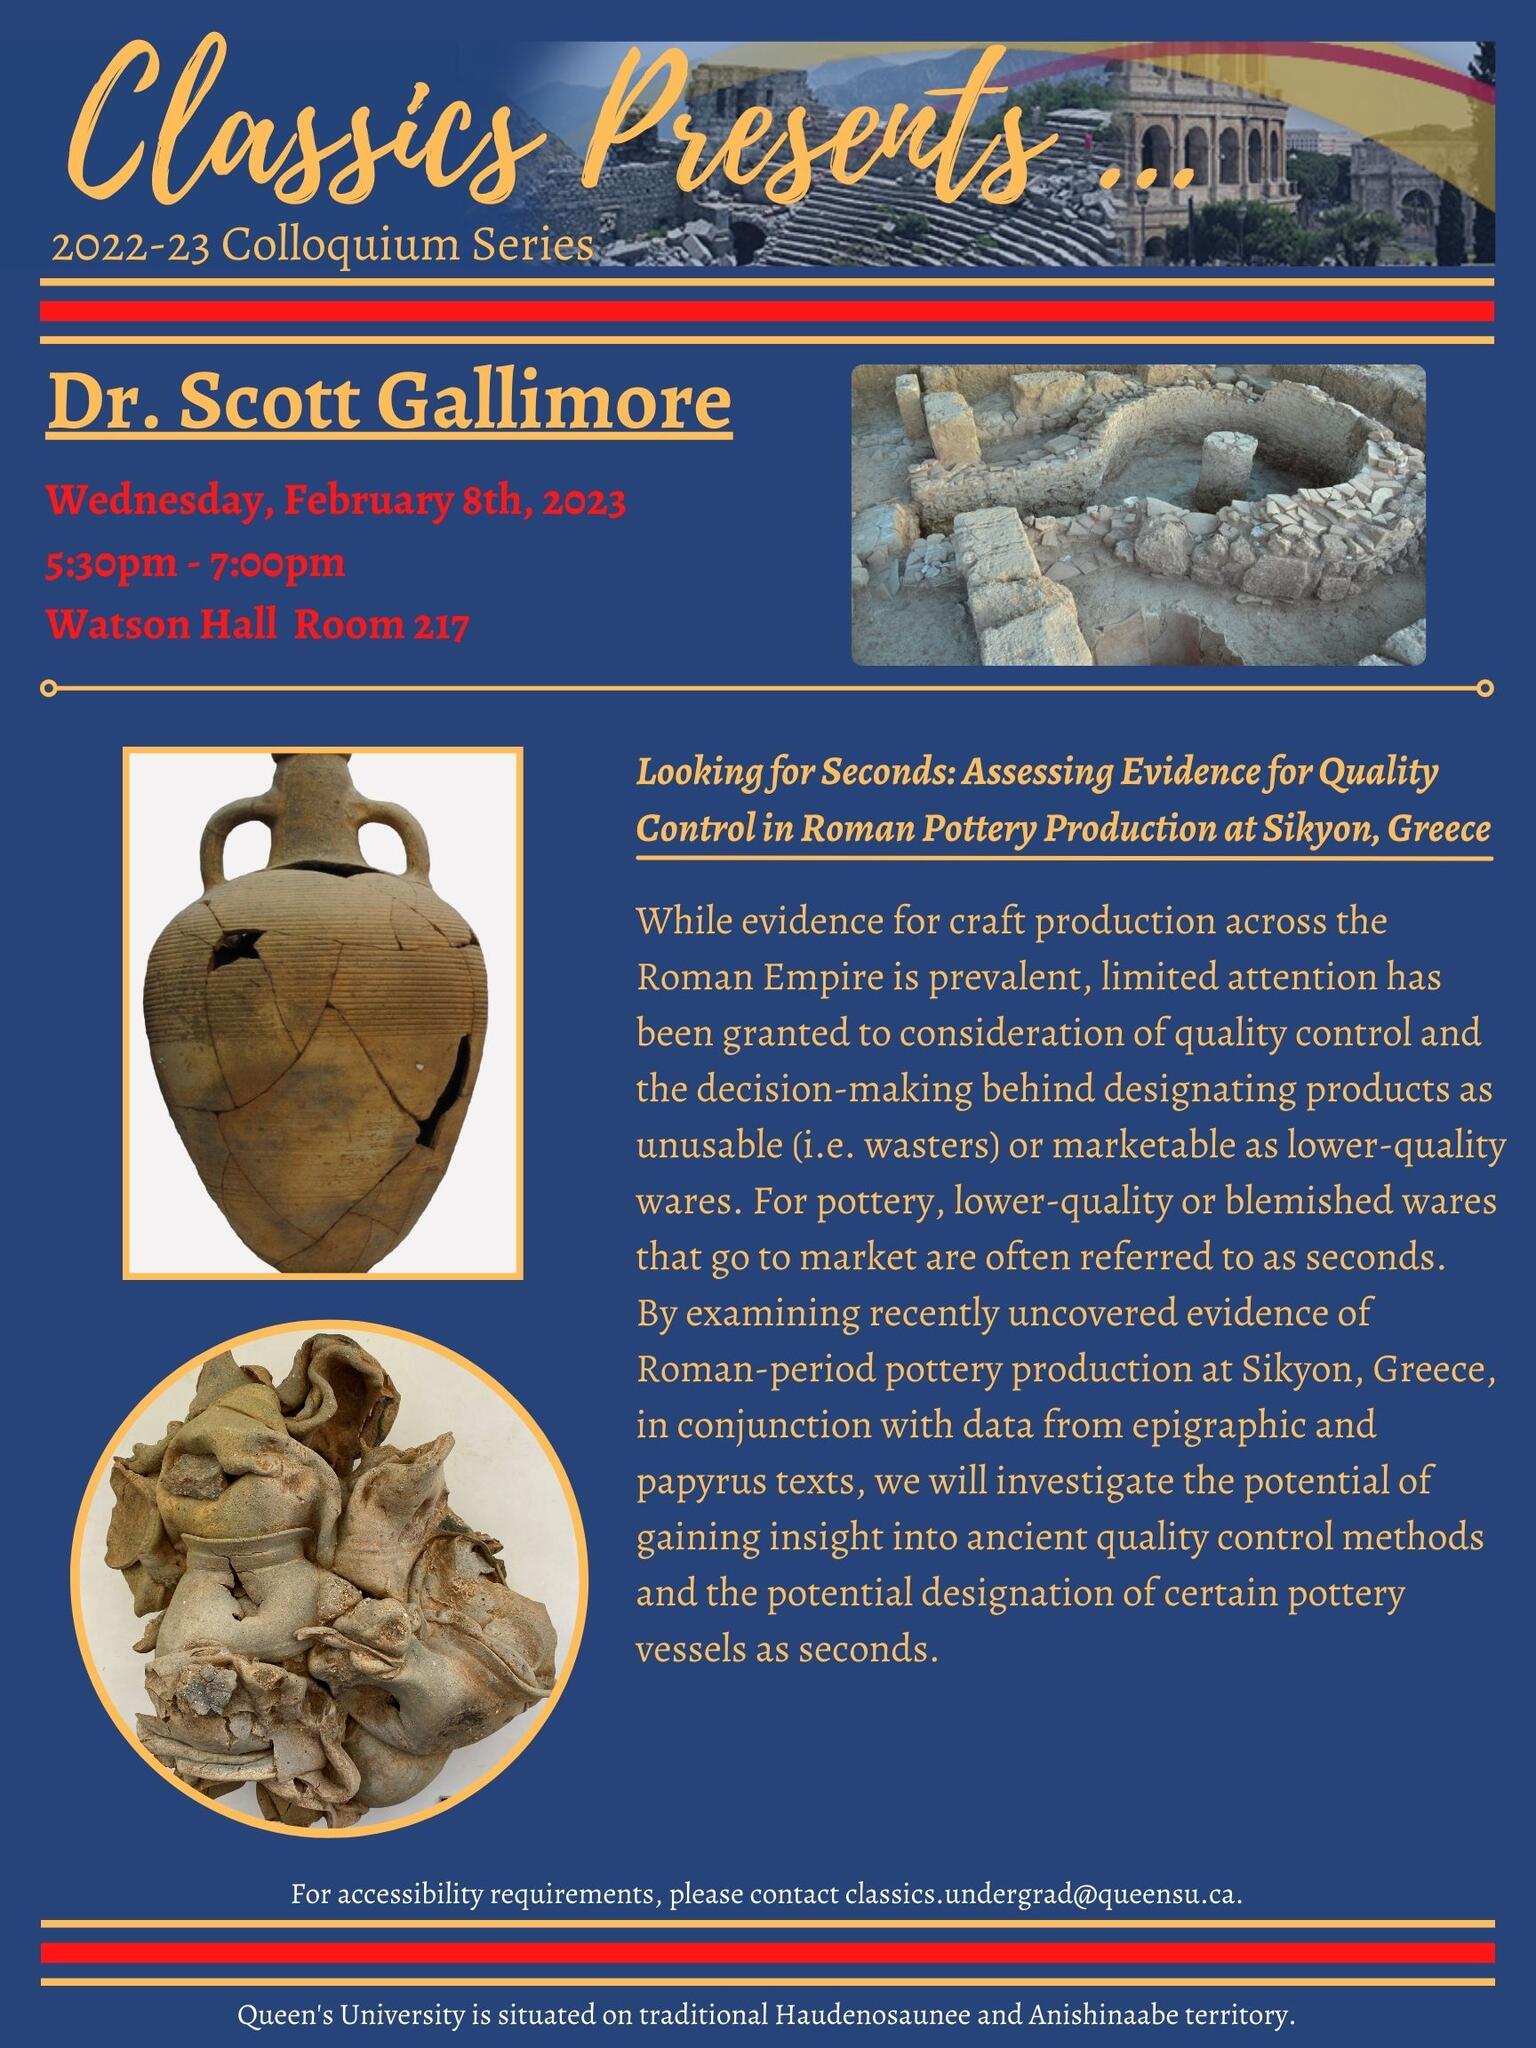 Classics Presents Dr. Scott Gallimore